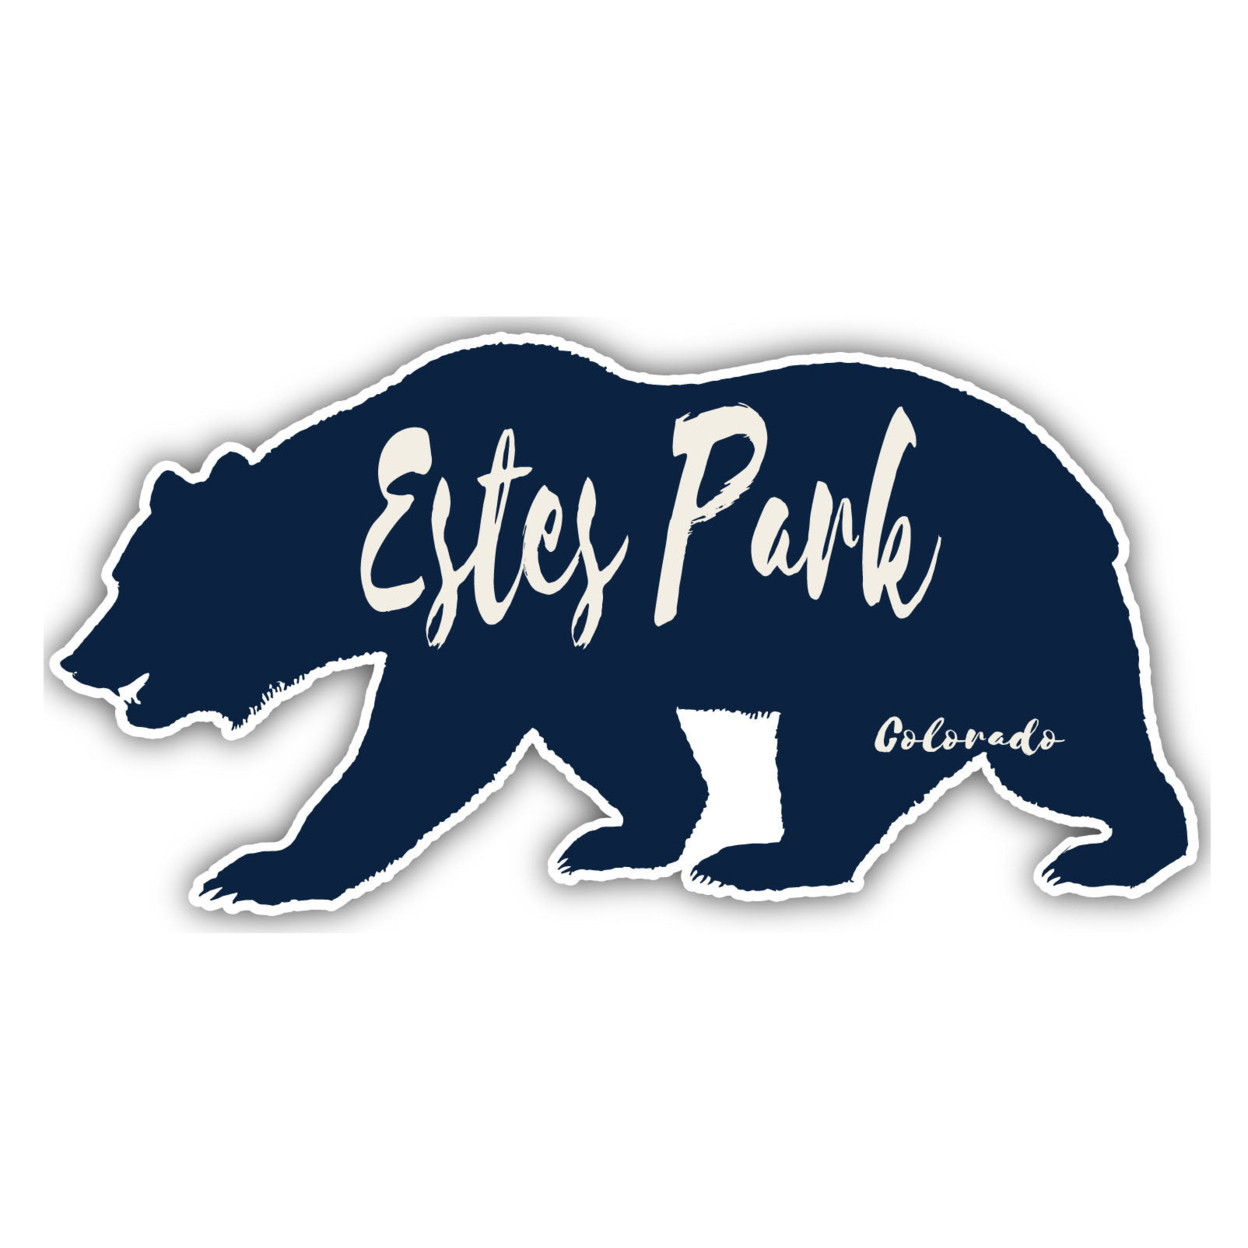 Estes Park Colorado Souvenir Decorative Stickers (Choose Theme And Size) - Single Unit, 12-Inch, Bear